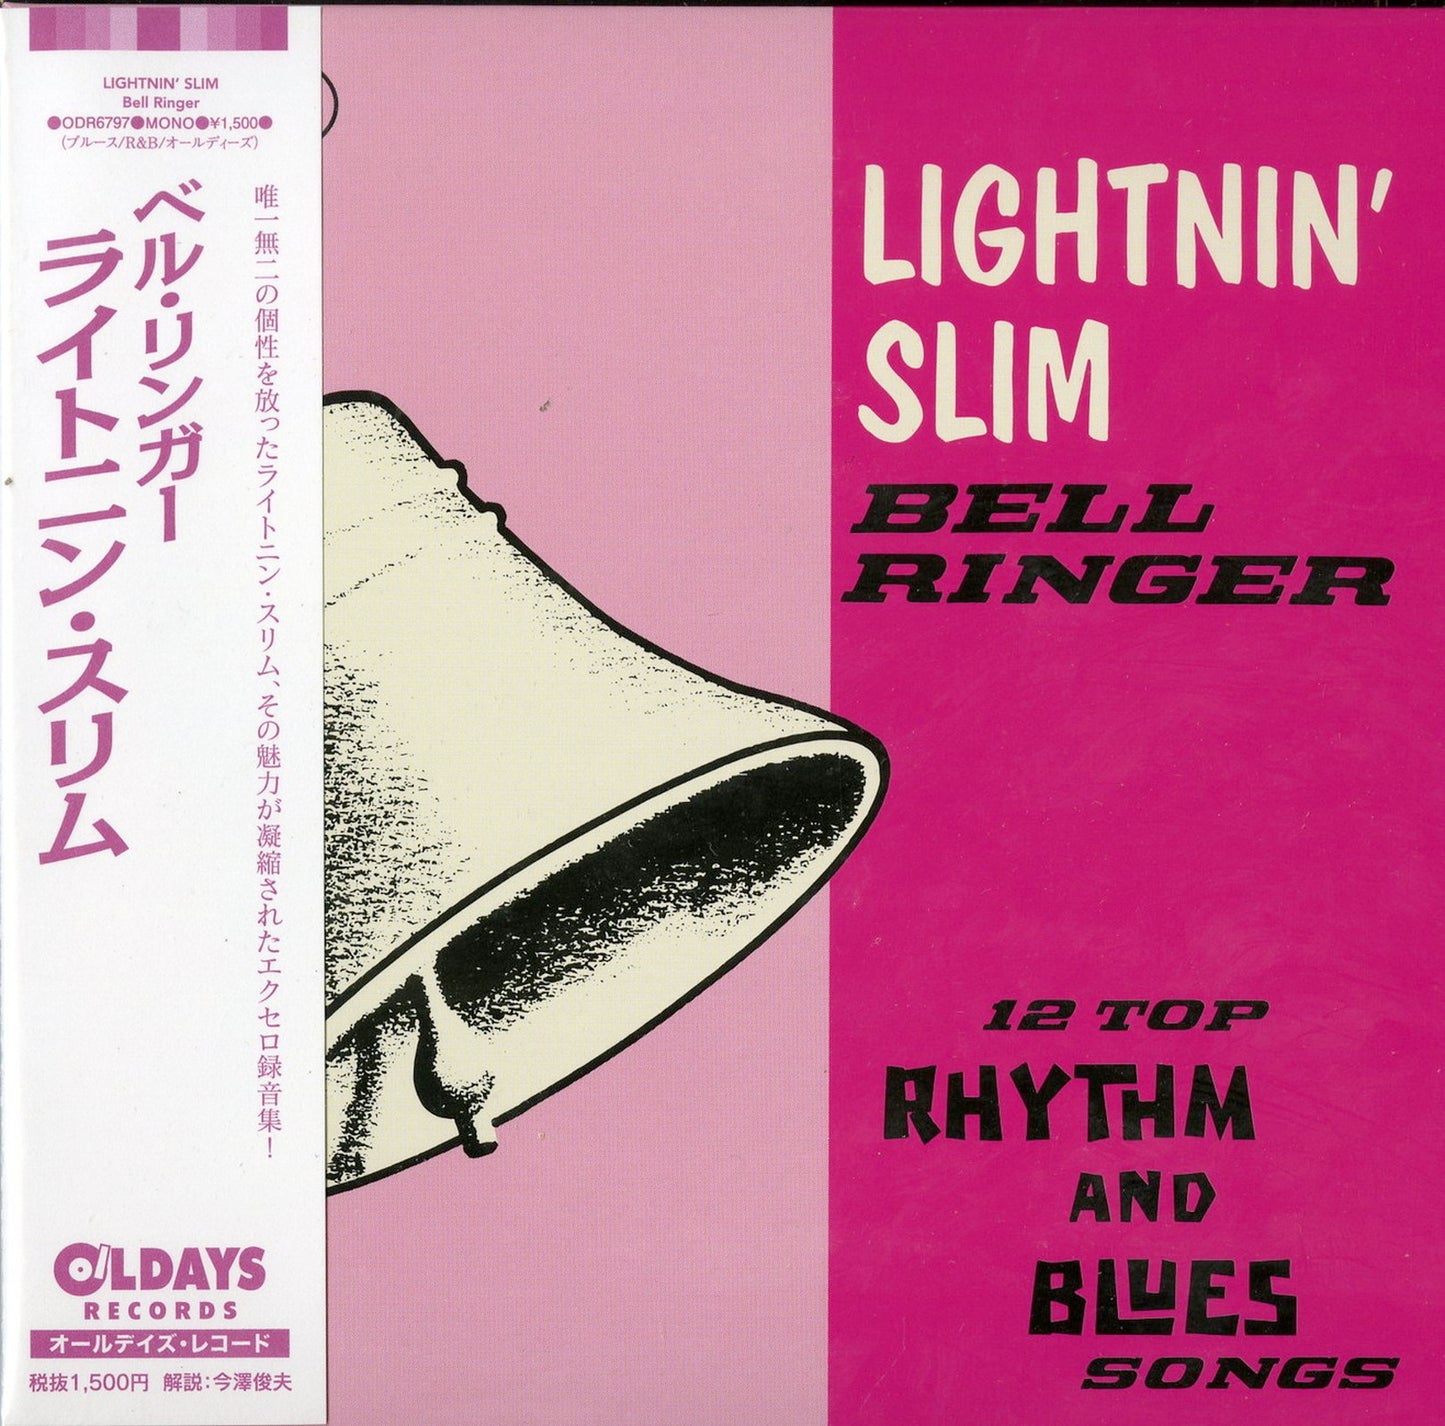 Lightnin' Slim - Bell Ringer - Japan  Mini LP CD Bonus Track